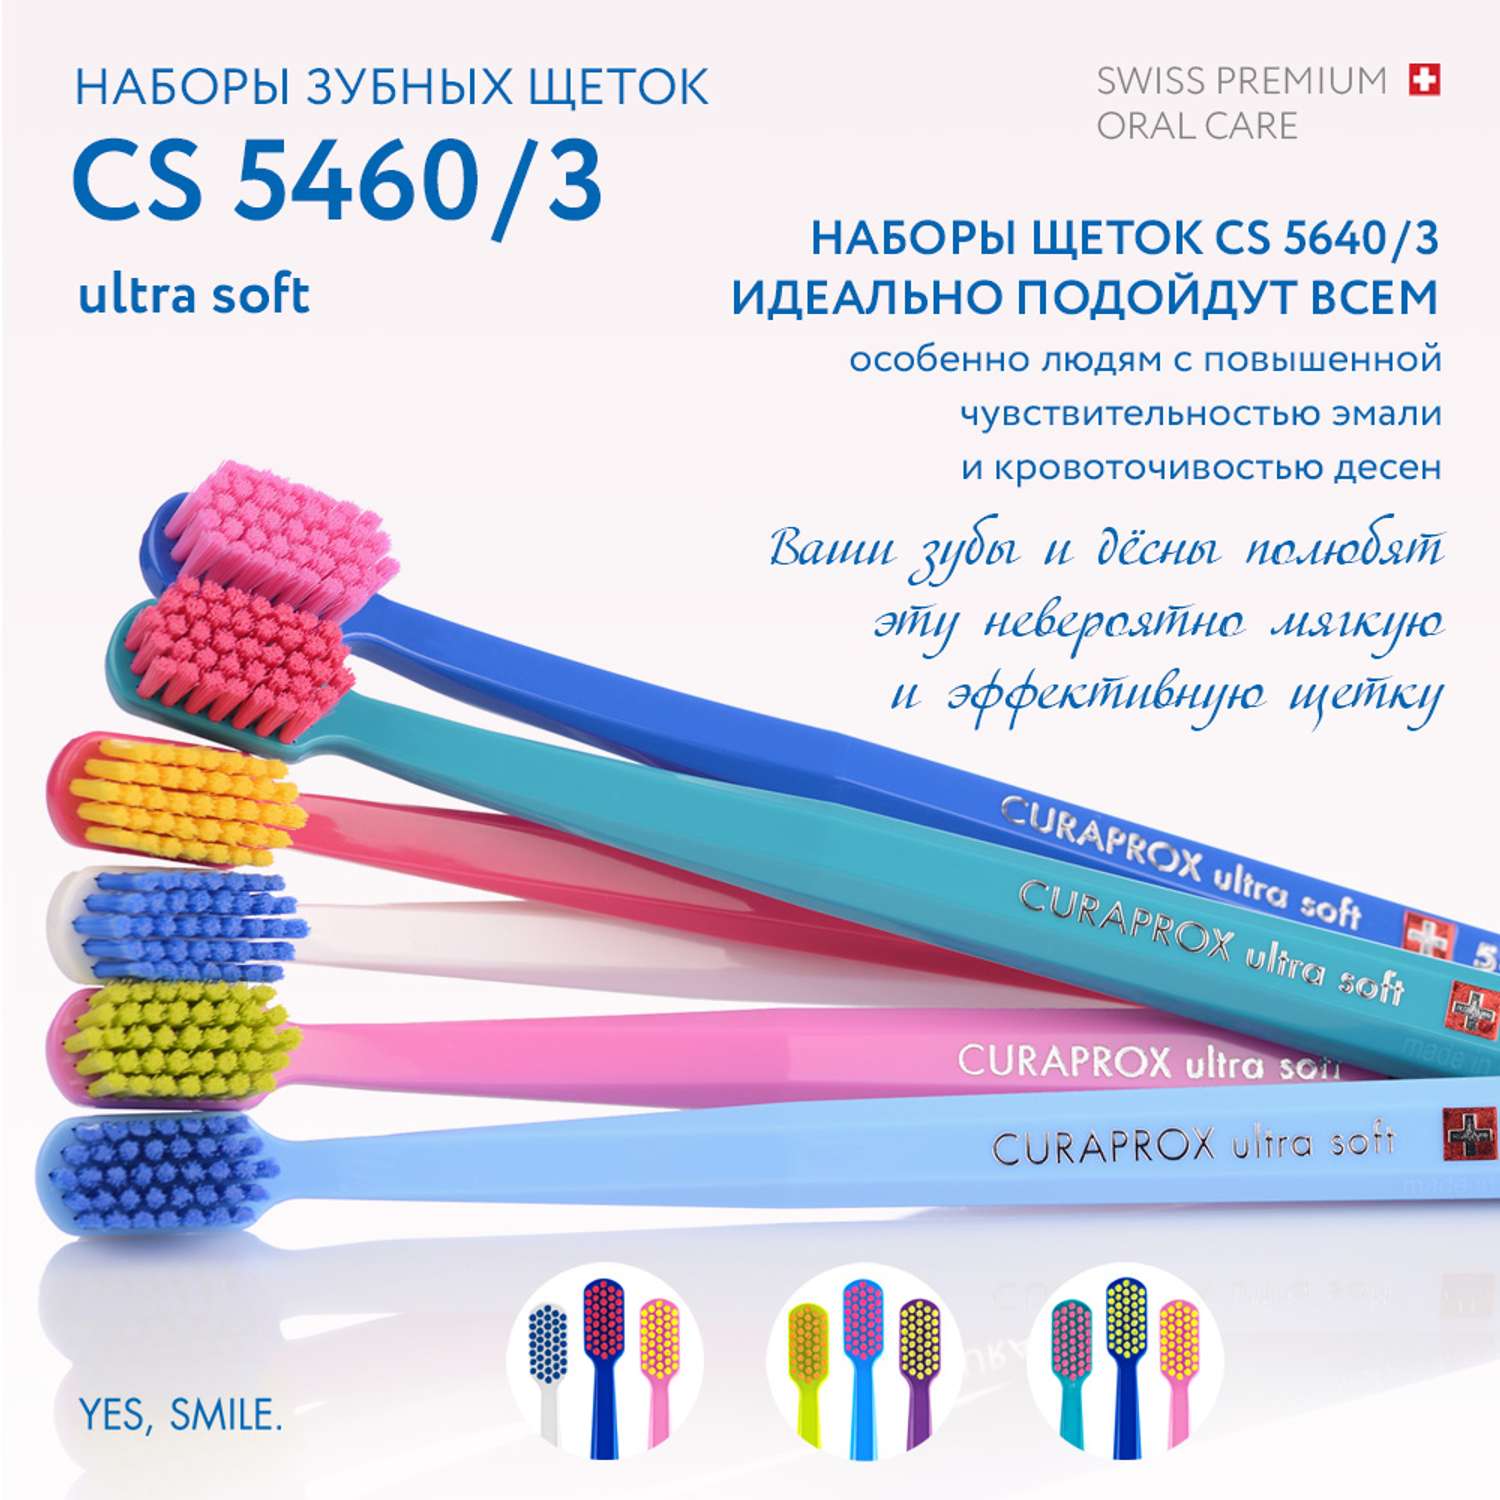 Набор зубных щеток Curaprox ultrasoft 3 шт салатовый-голубой-фиолетовый - фото 9